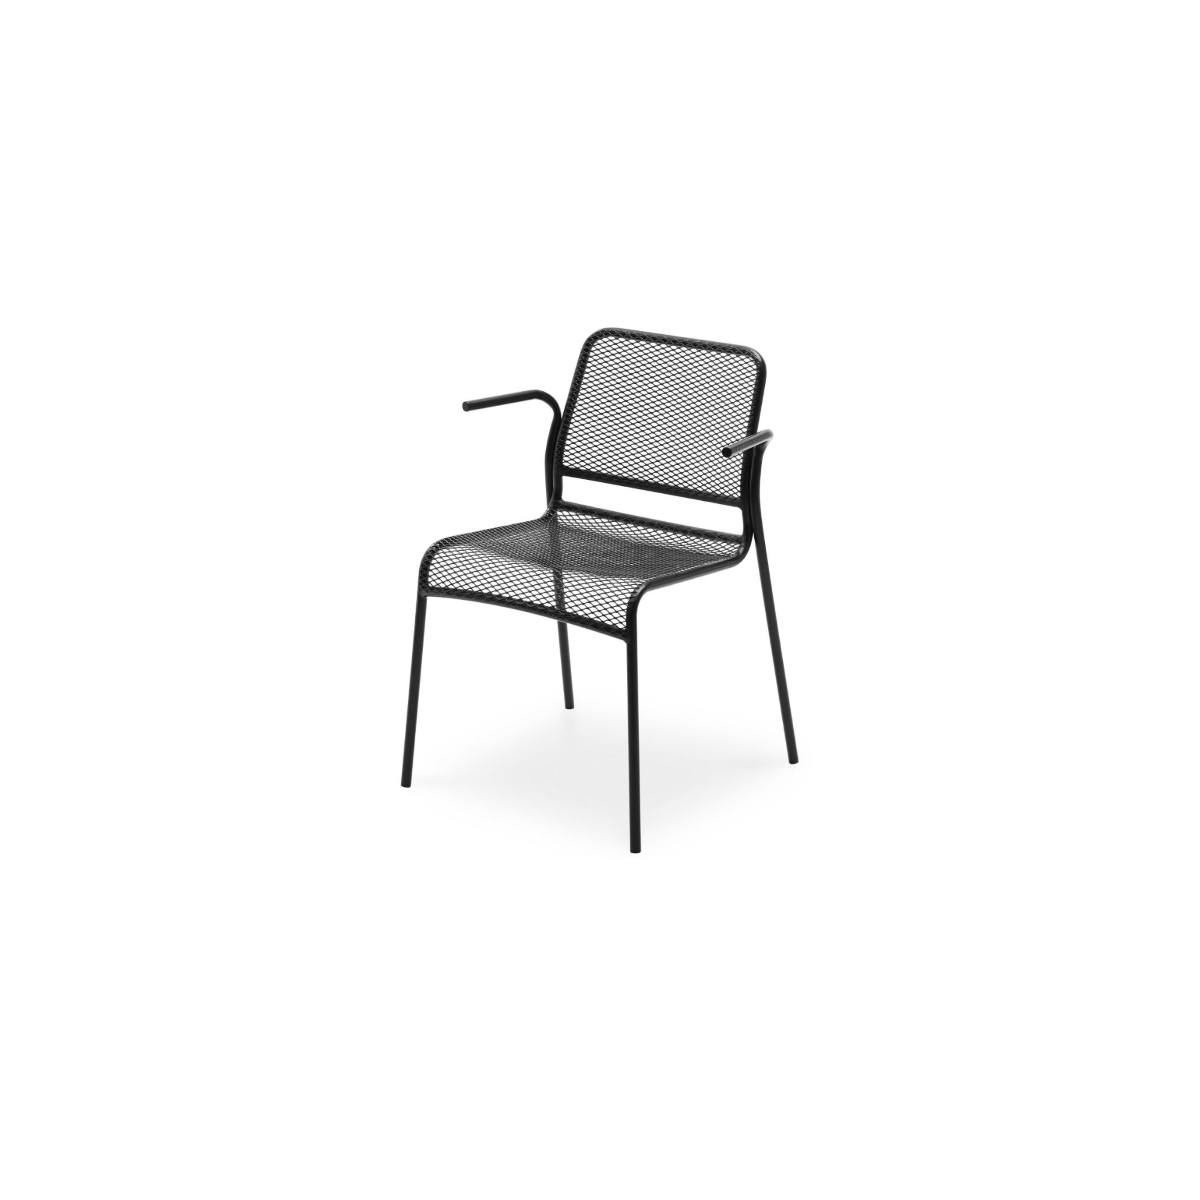 https://bo.alinhadavizinha.com/FileUploads/produtos/mobiliario/cadeiras/1395013_mira-armchair_preto-antracite_1.png